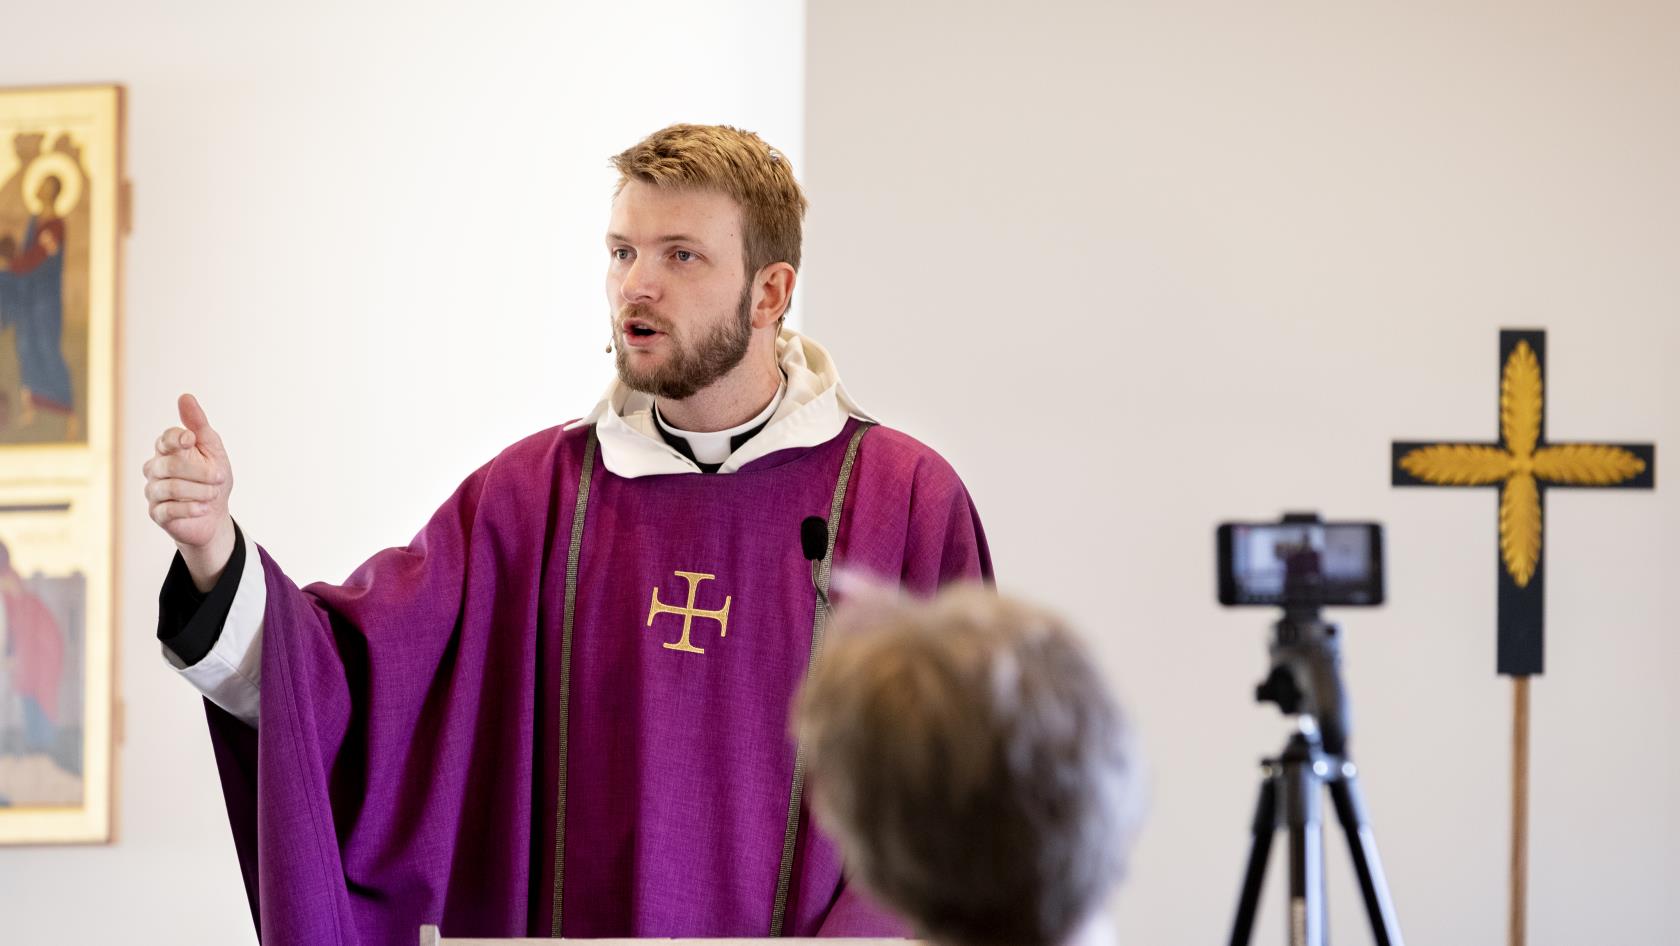 En präst predikar framför en kamera som filmar för direktsändning på webben.